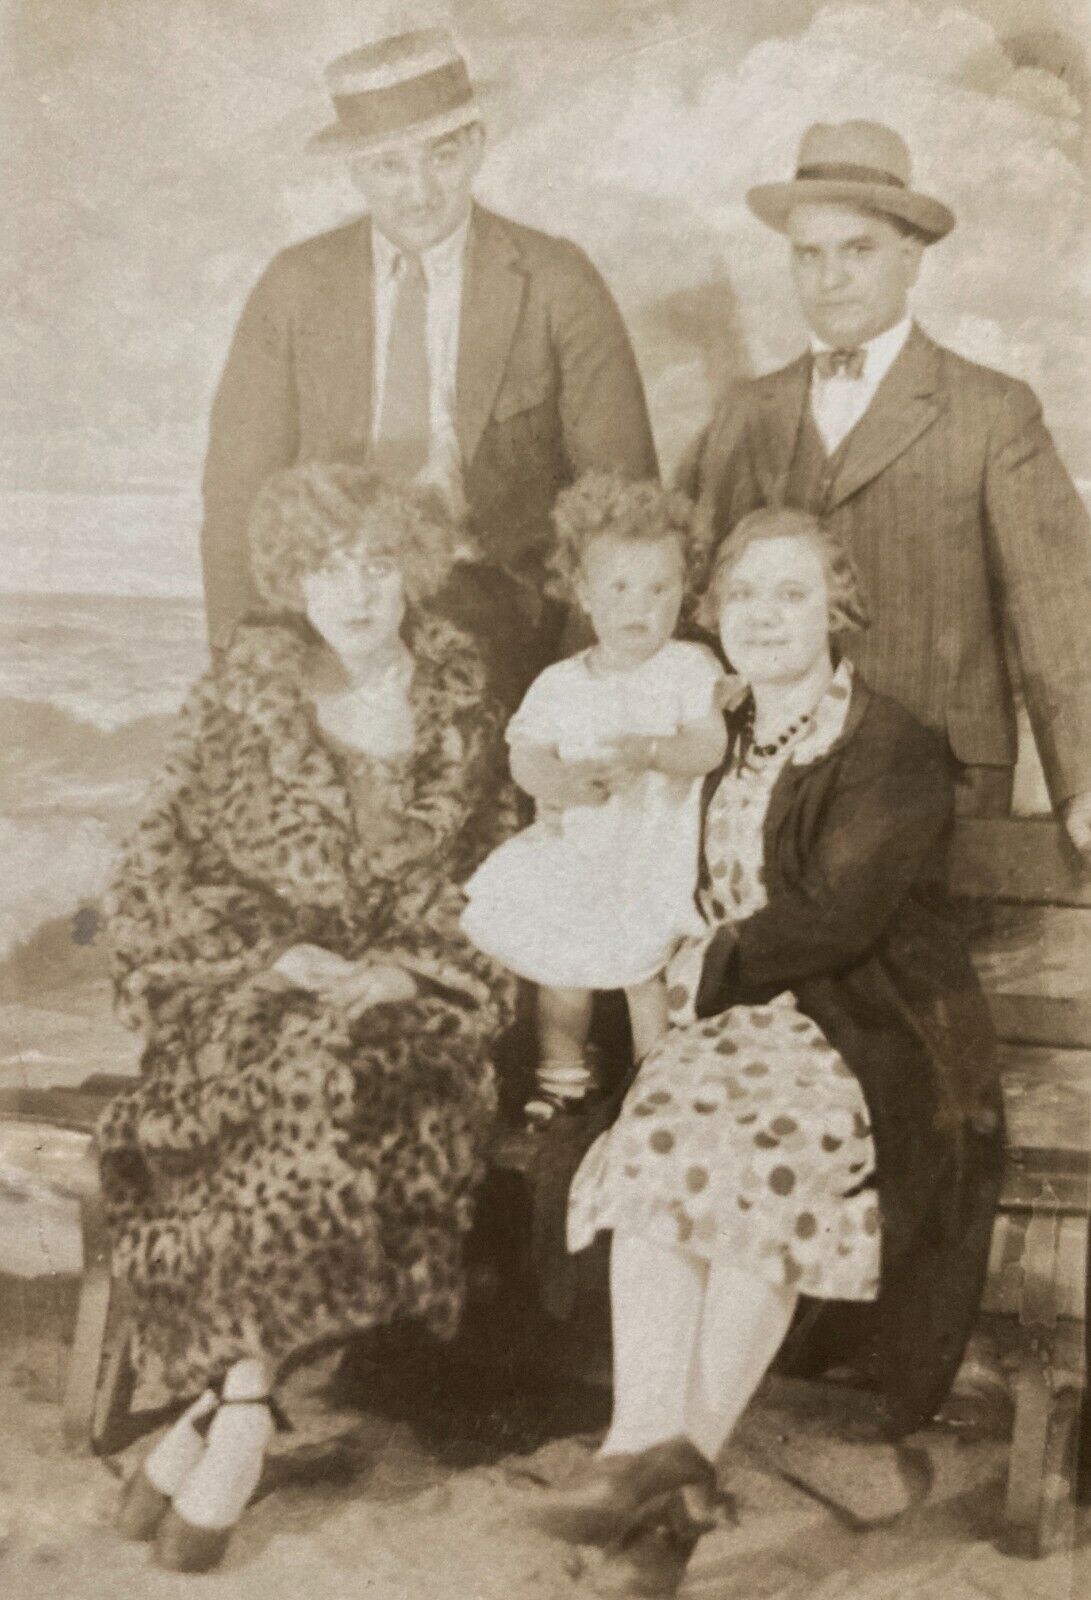 RPPC Antique 1920s Sepia Postcard Studio Photo Family Couples Fashion